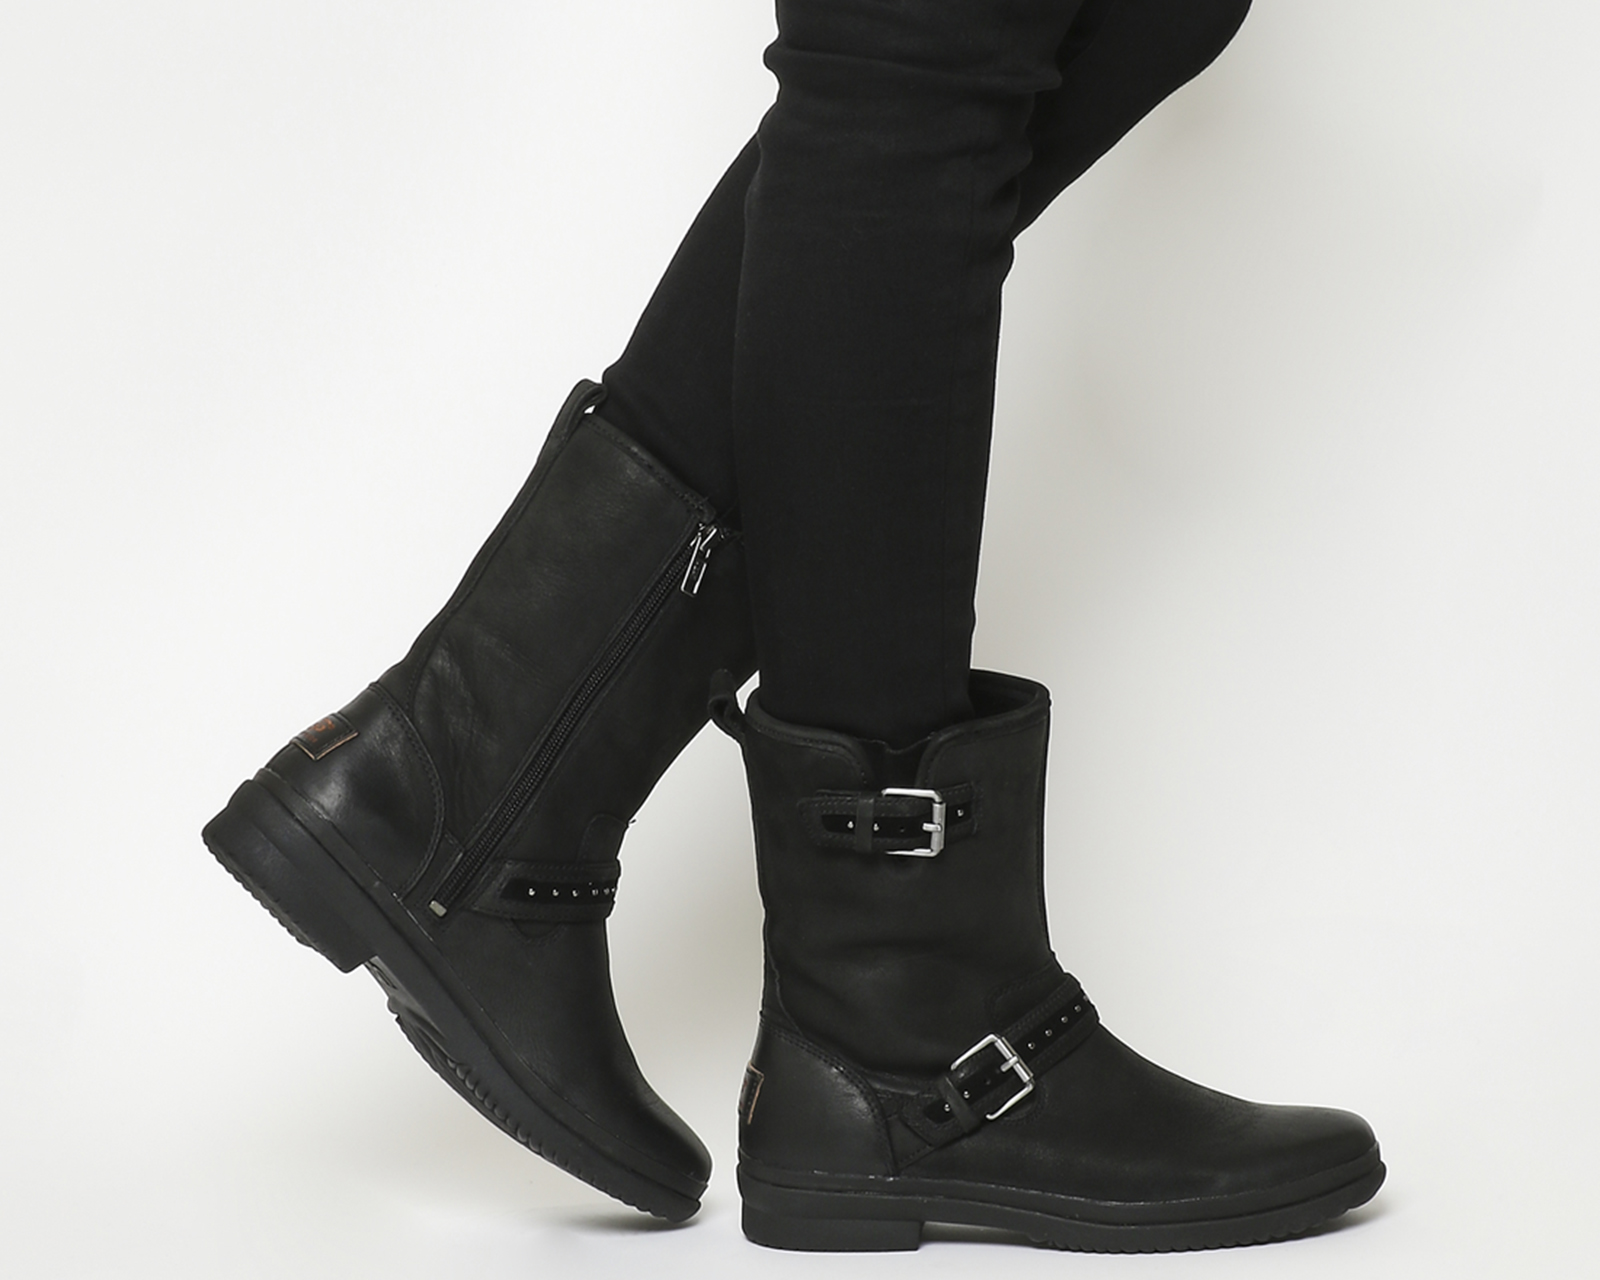 UGGJenise BootsBlack Leather